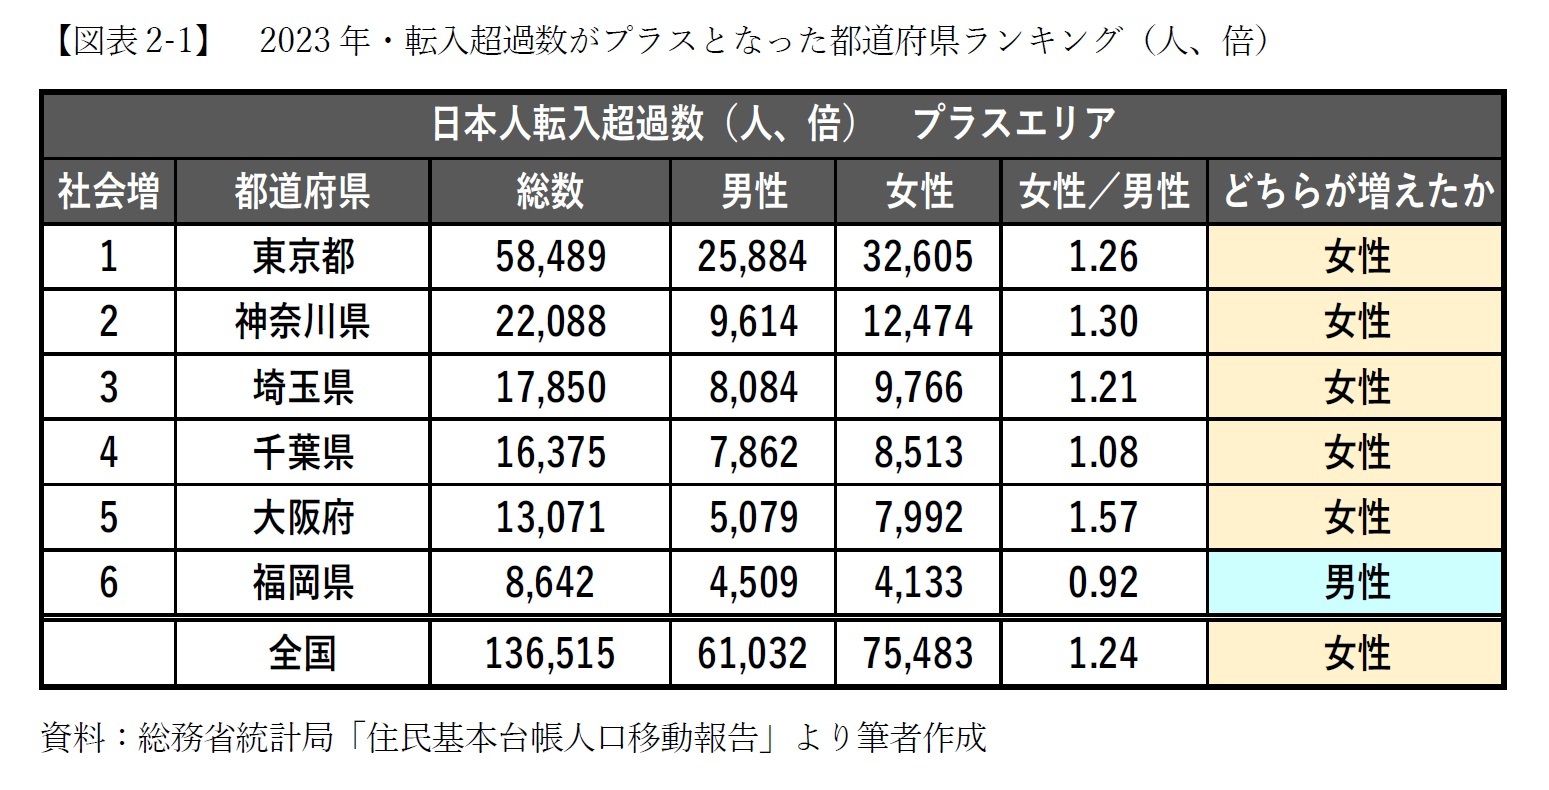 【図表2-1】　2023年・転入超過数がプラスとなった都道府県ランキング（人、倍）